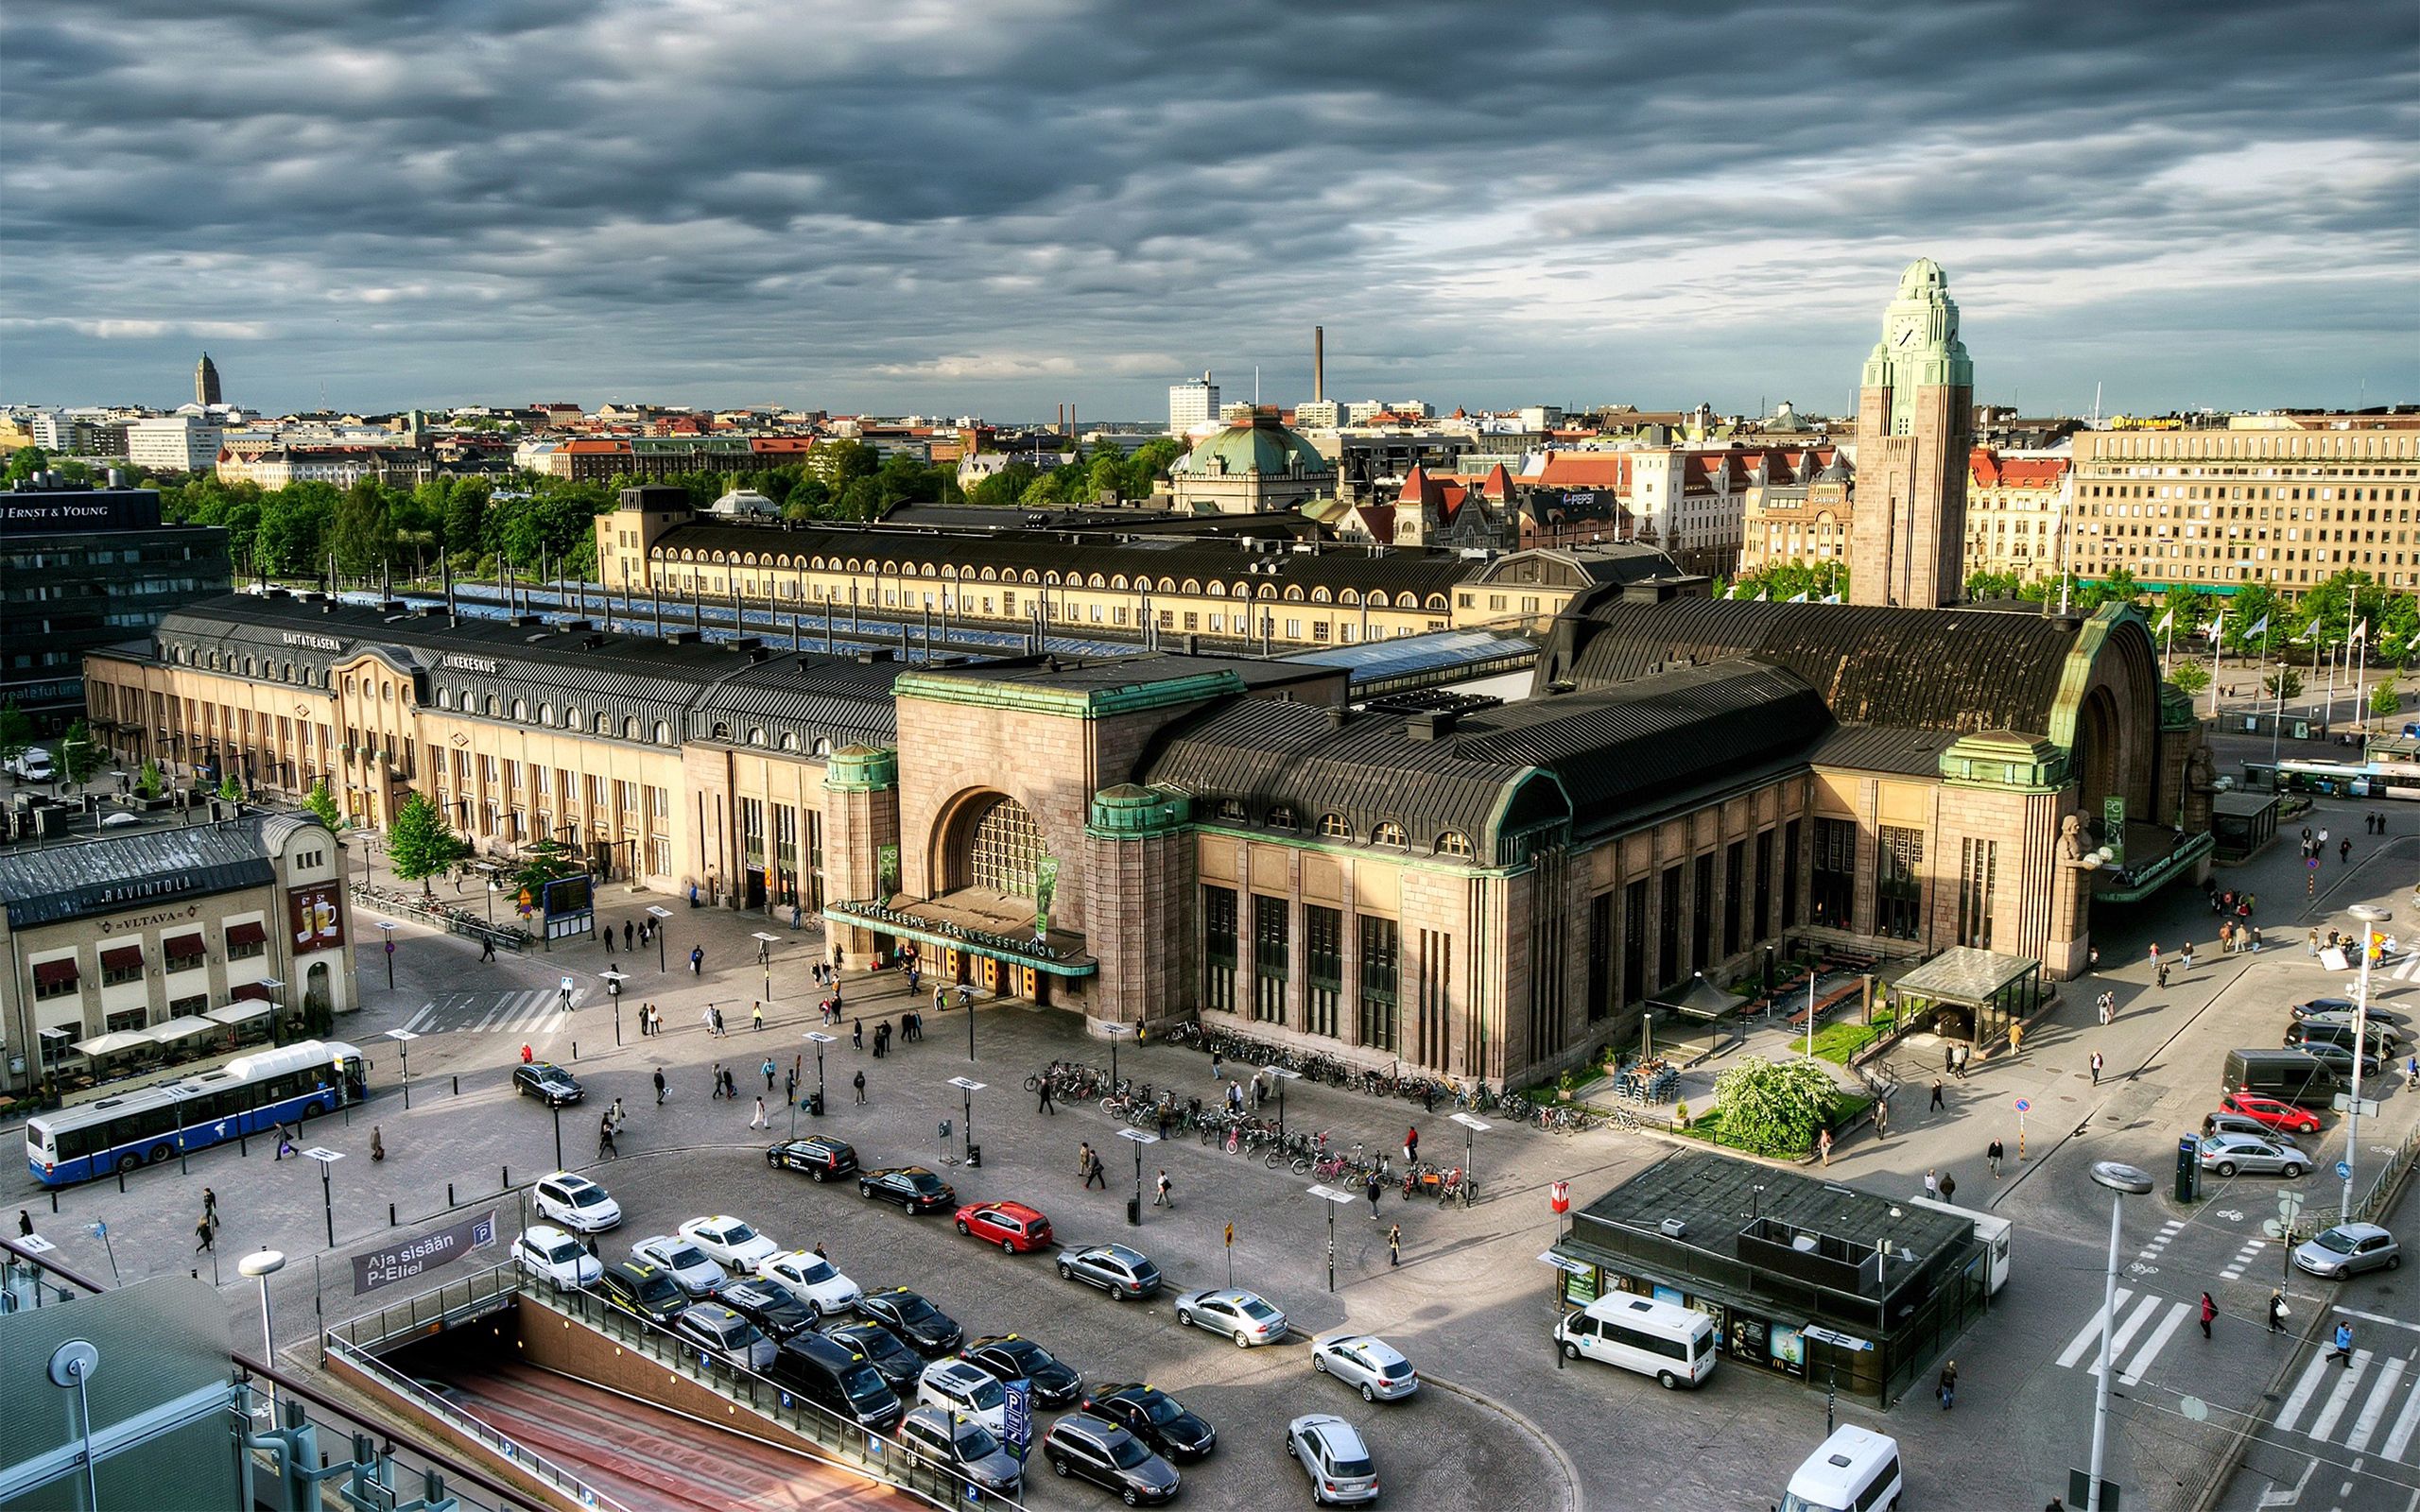 Популярные заставки и фоны Хельсинки на компьютер